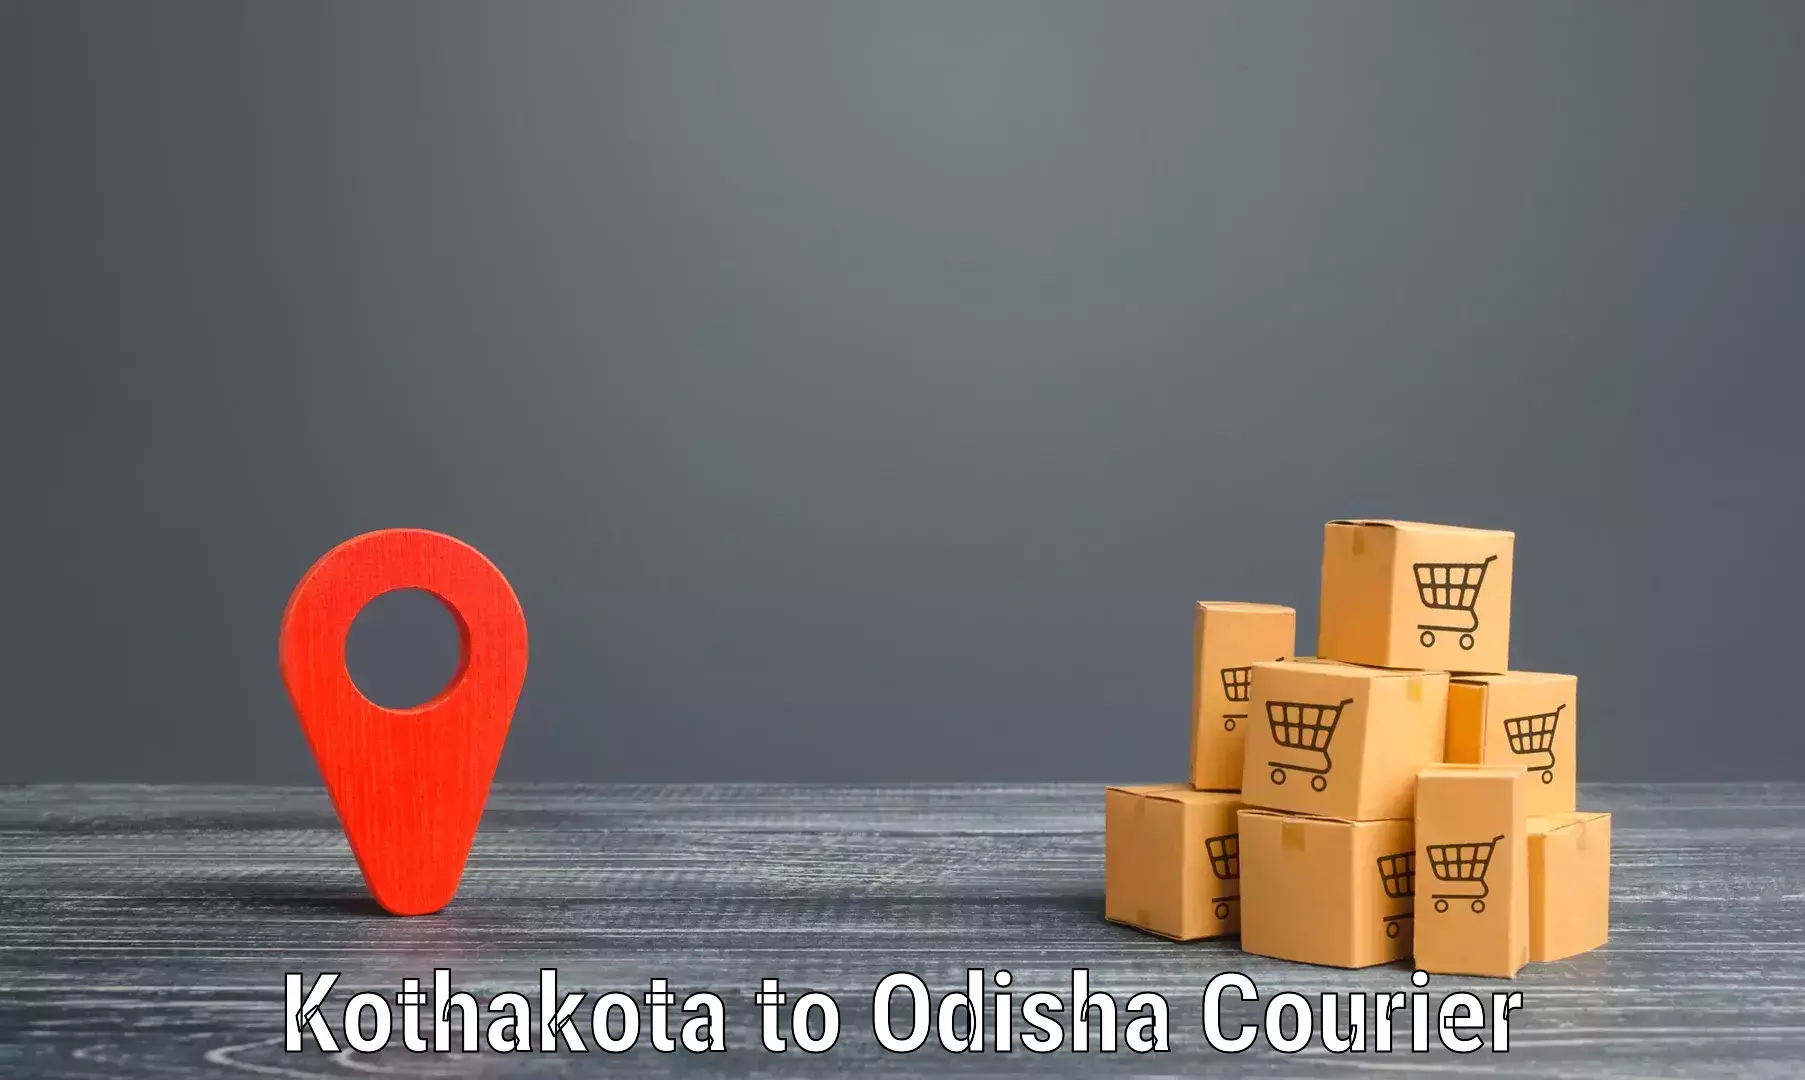 Digital courier platforms Kothakota to Muniguda